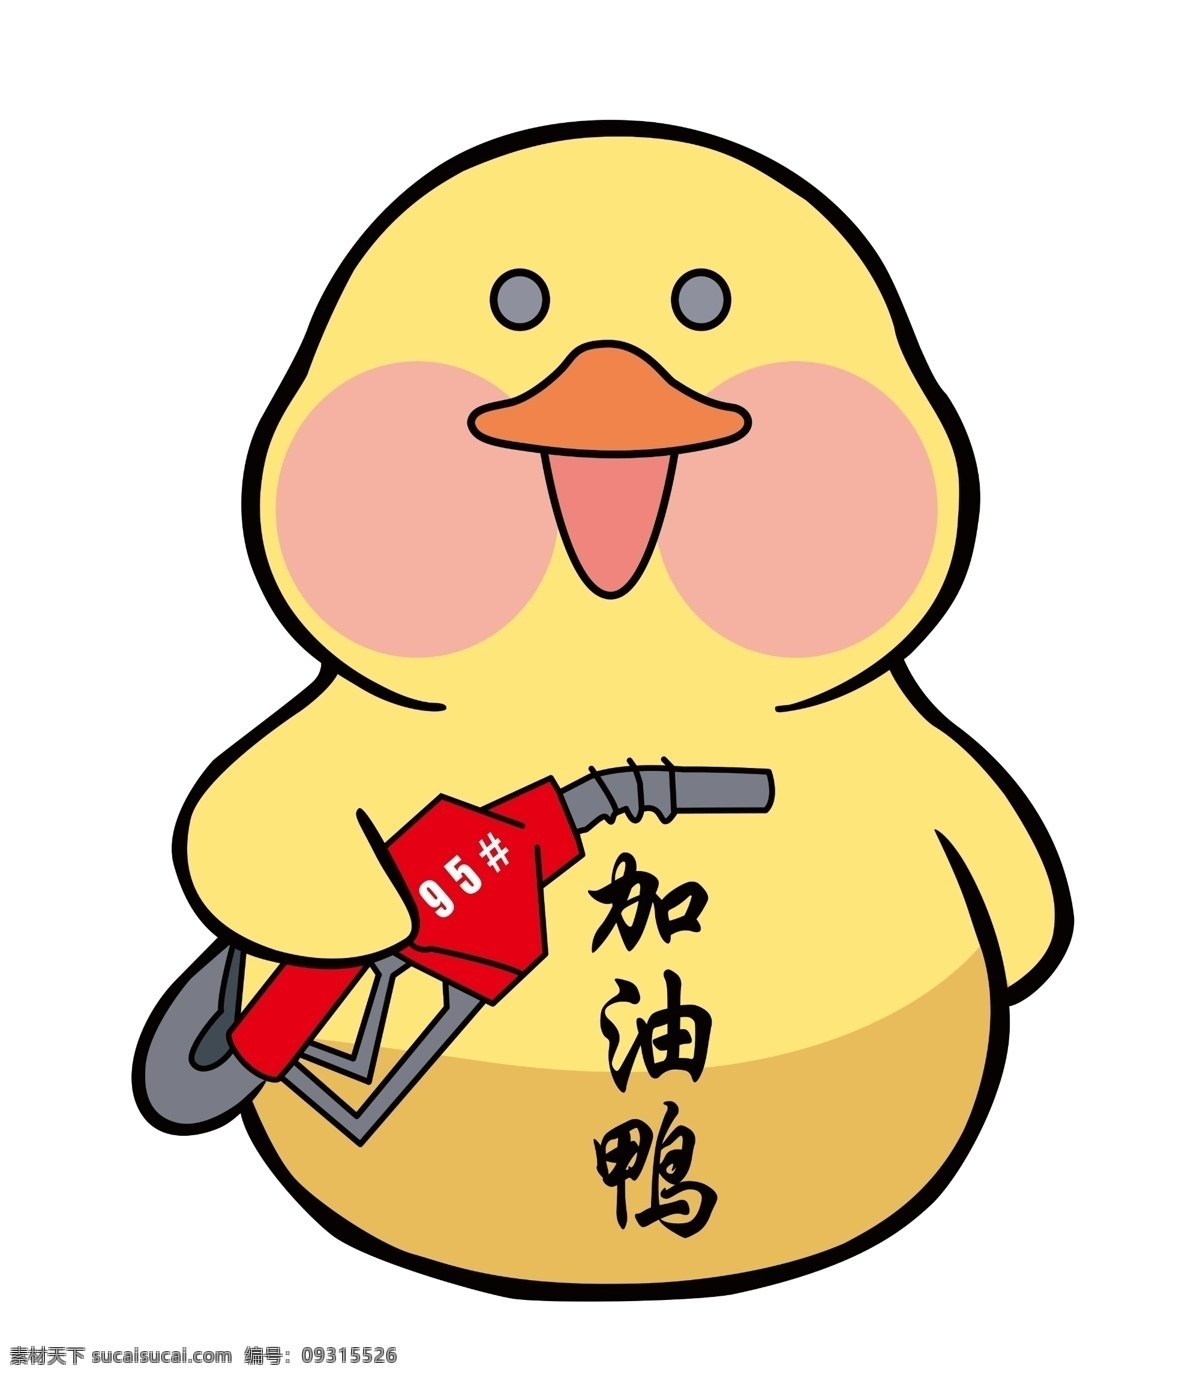 鸭子 加油鸭 黄色鸭子 可爱鸭子 卡通鸭子 小黄鸭 动漫动画 动漫人物